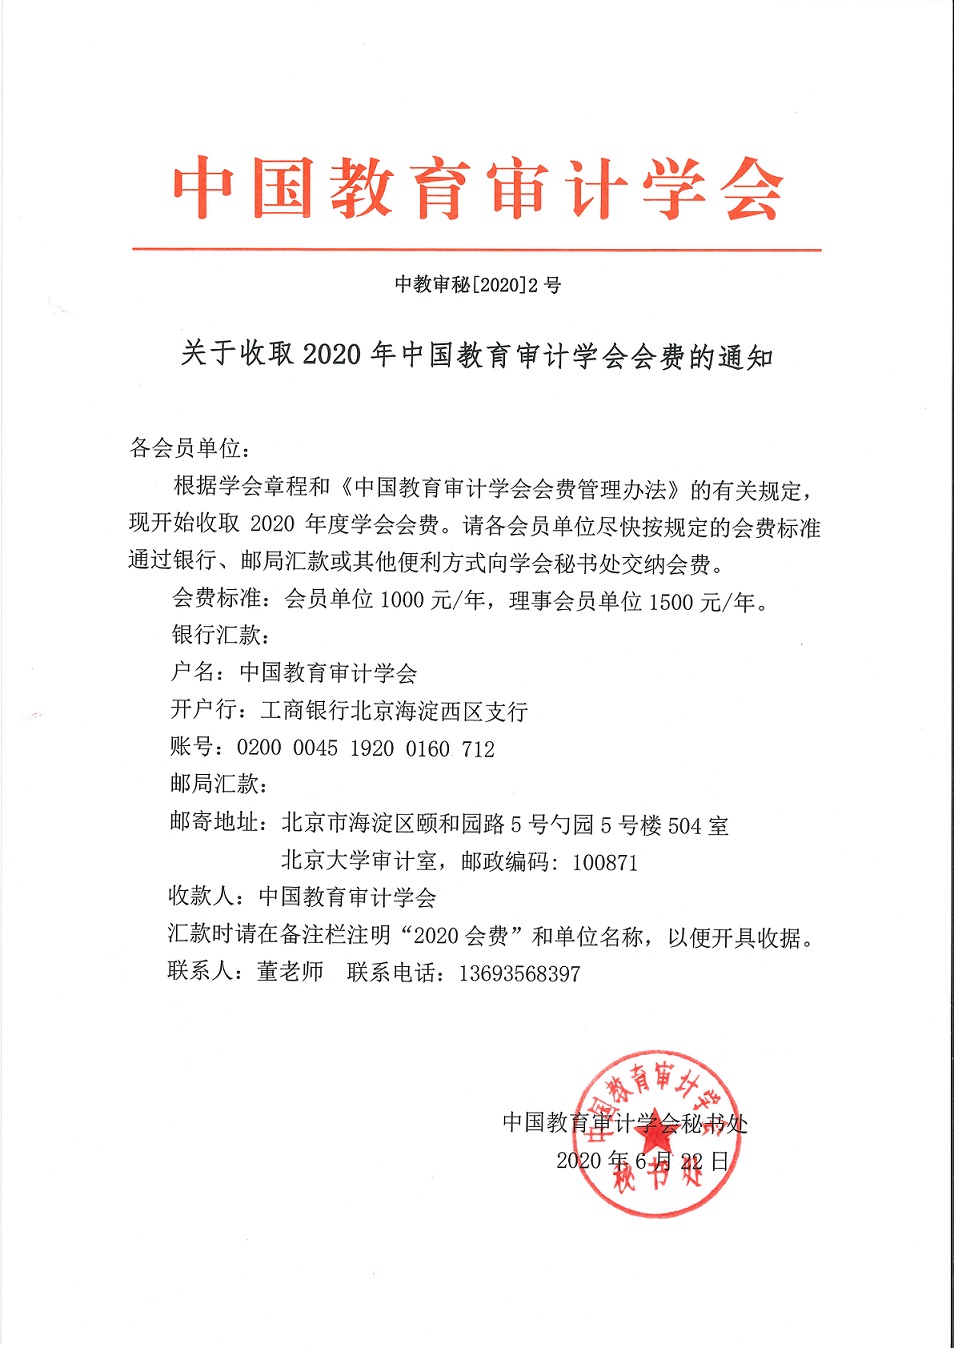 附件1.中教审秘[2020]2号—关于收取2020年中国教育审计学会会费的通知.jpg